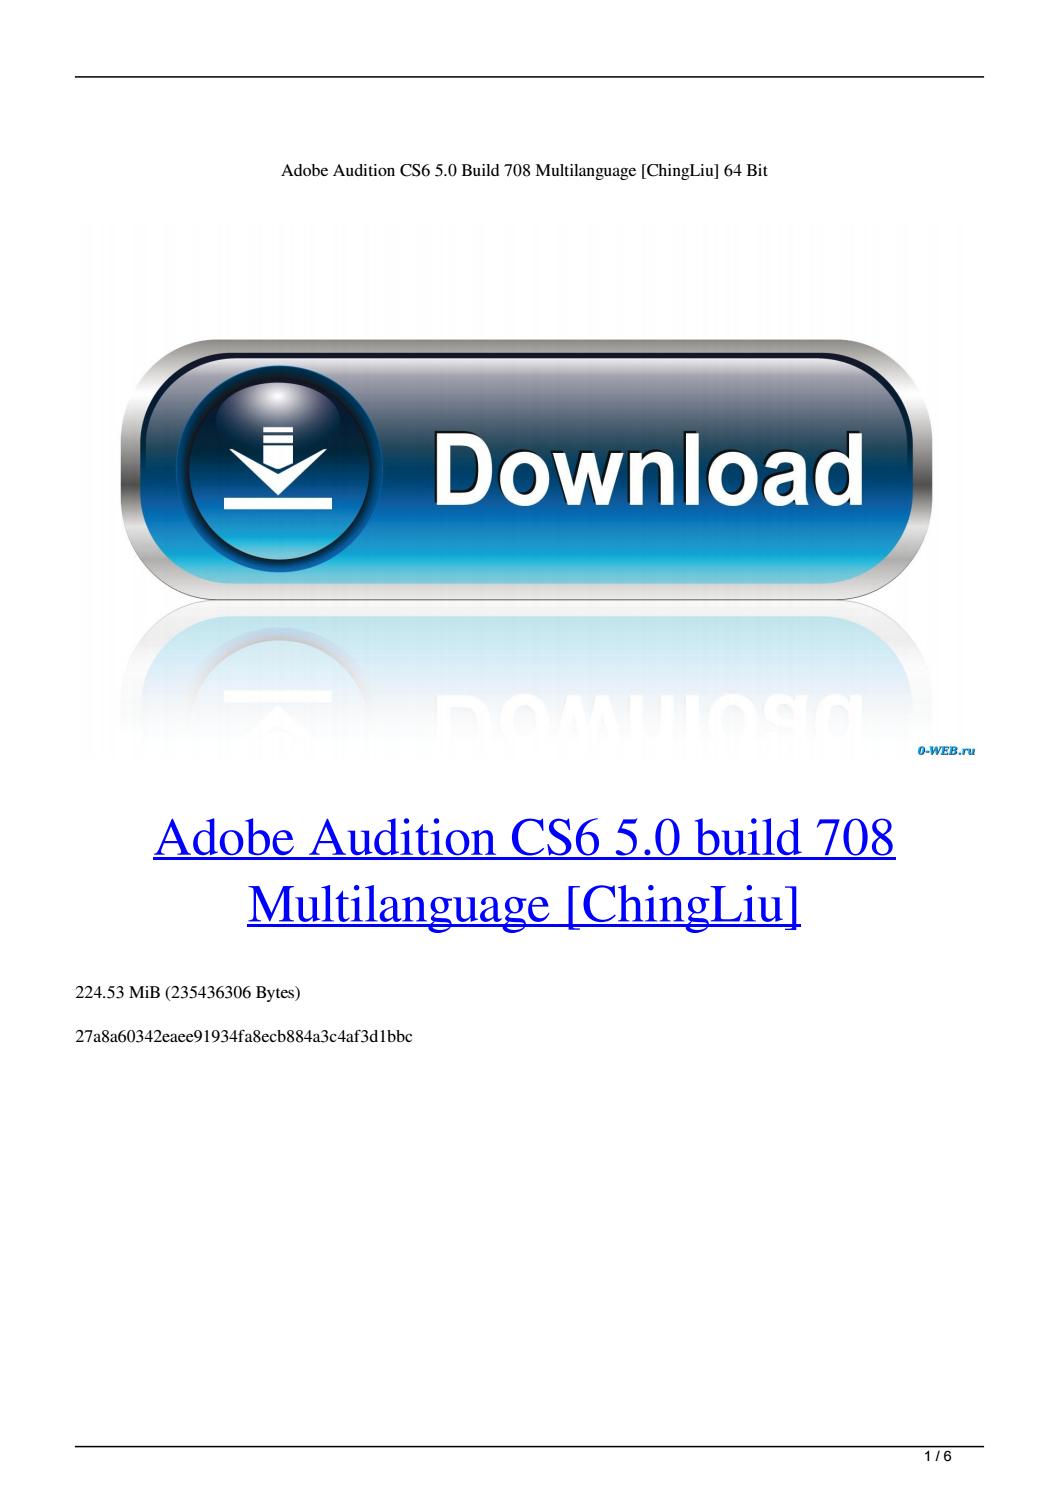 Telecharger Adobe Audition 1.5 Crack Gratuit